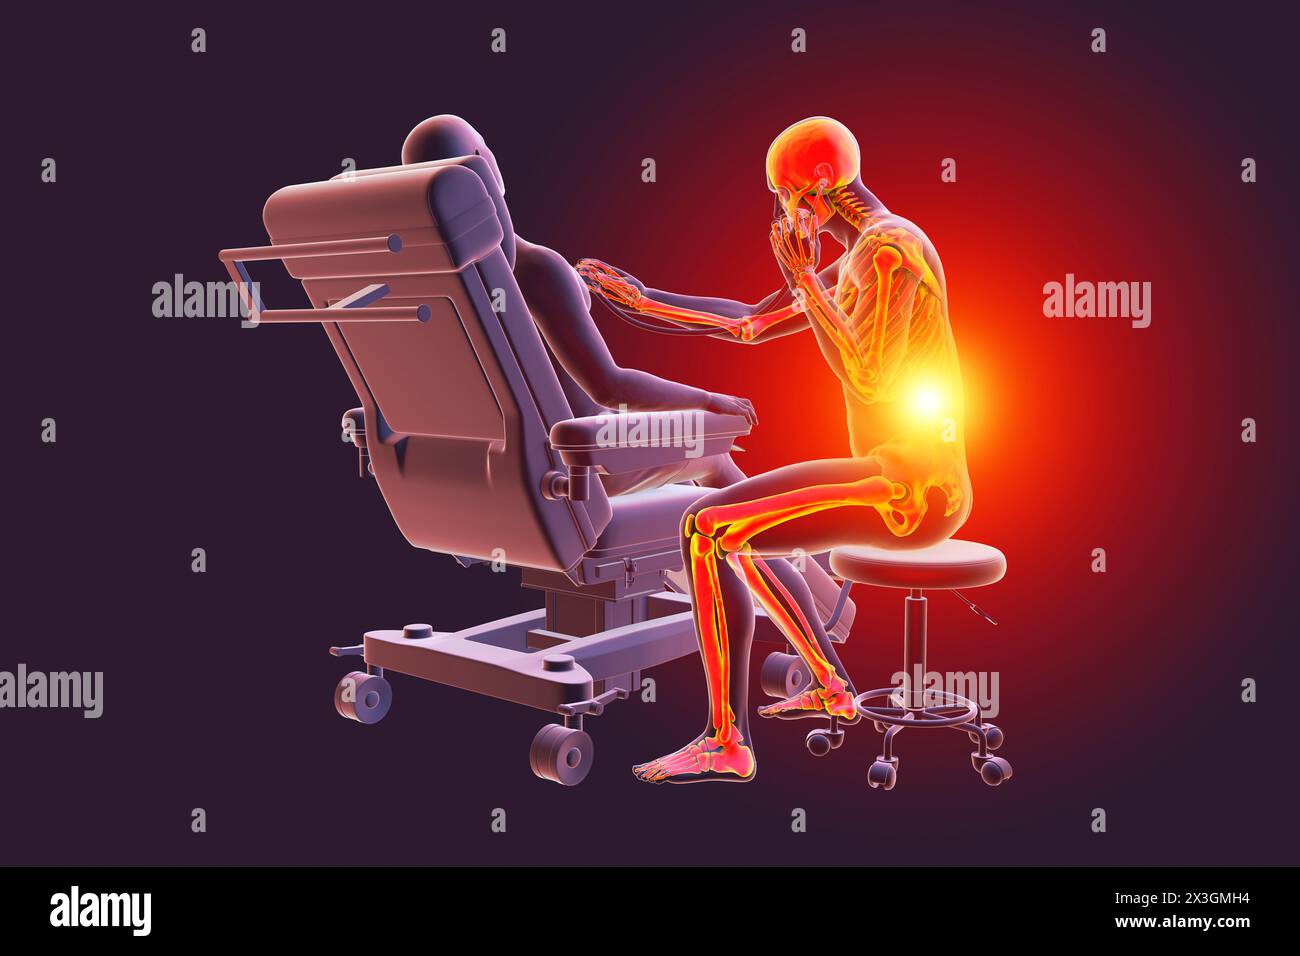 Illustration, die Arbeitsgefahren im Gesundheitswesen symbolisiert, zeigt ein medizinisches Fachpersonal, das Rückenschmerzen erlebt. Stockfoto